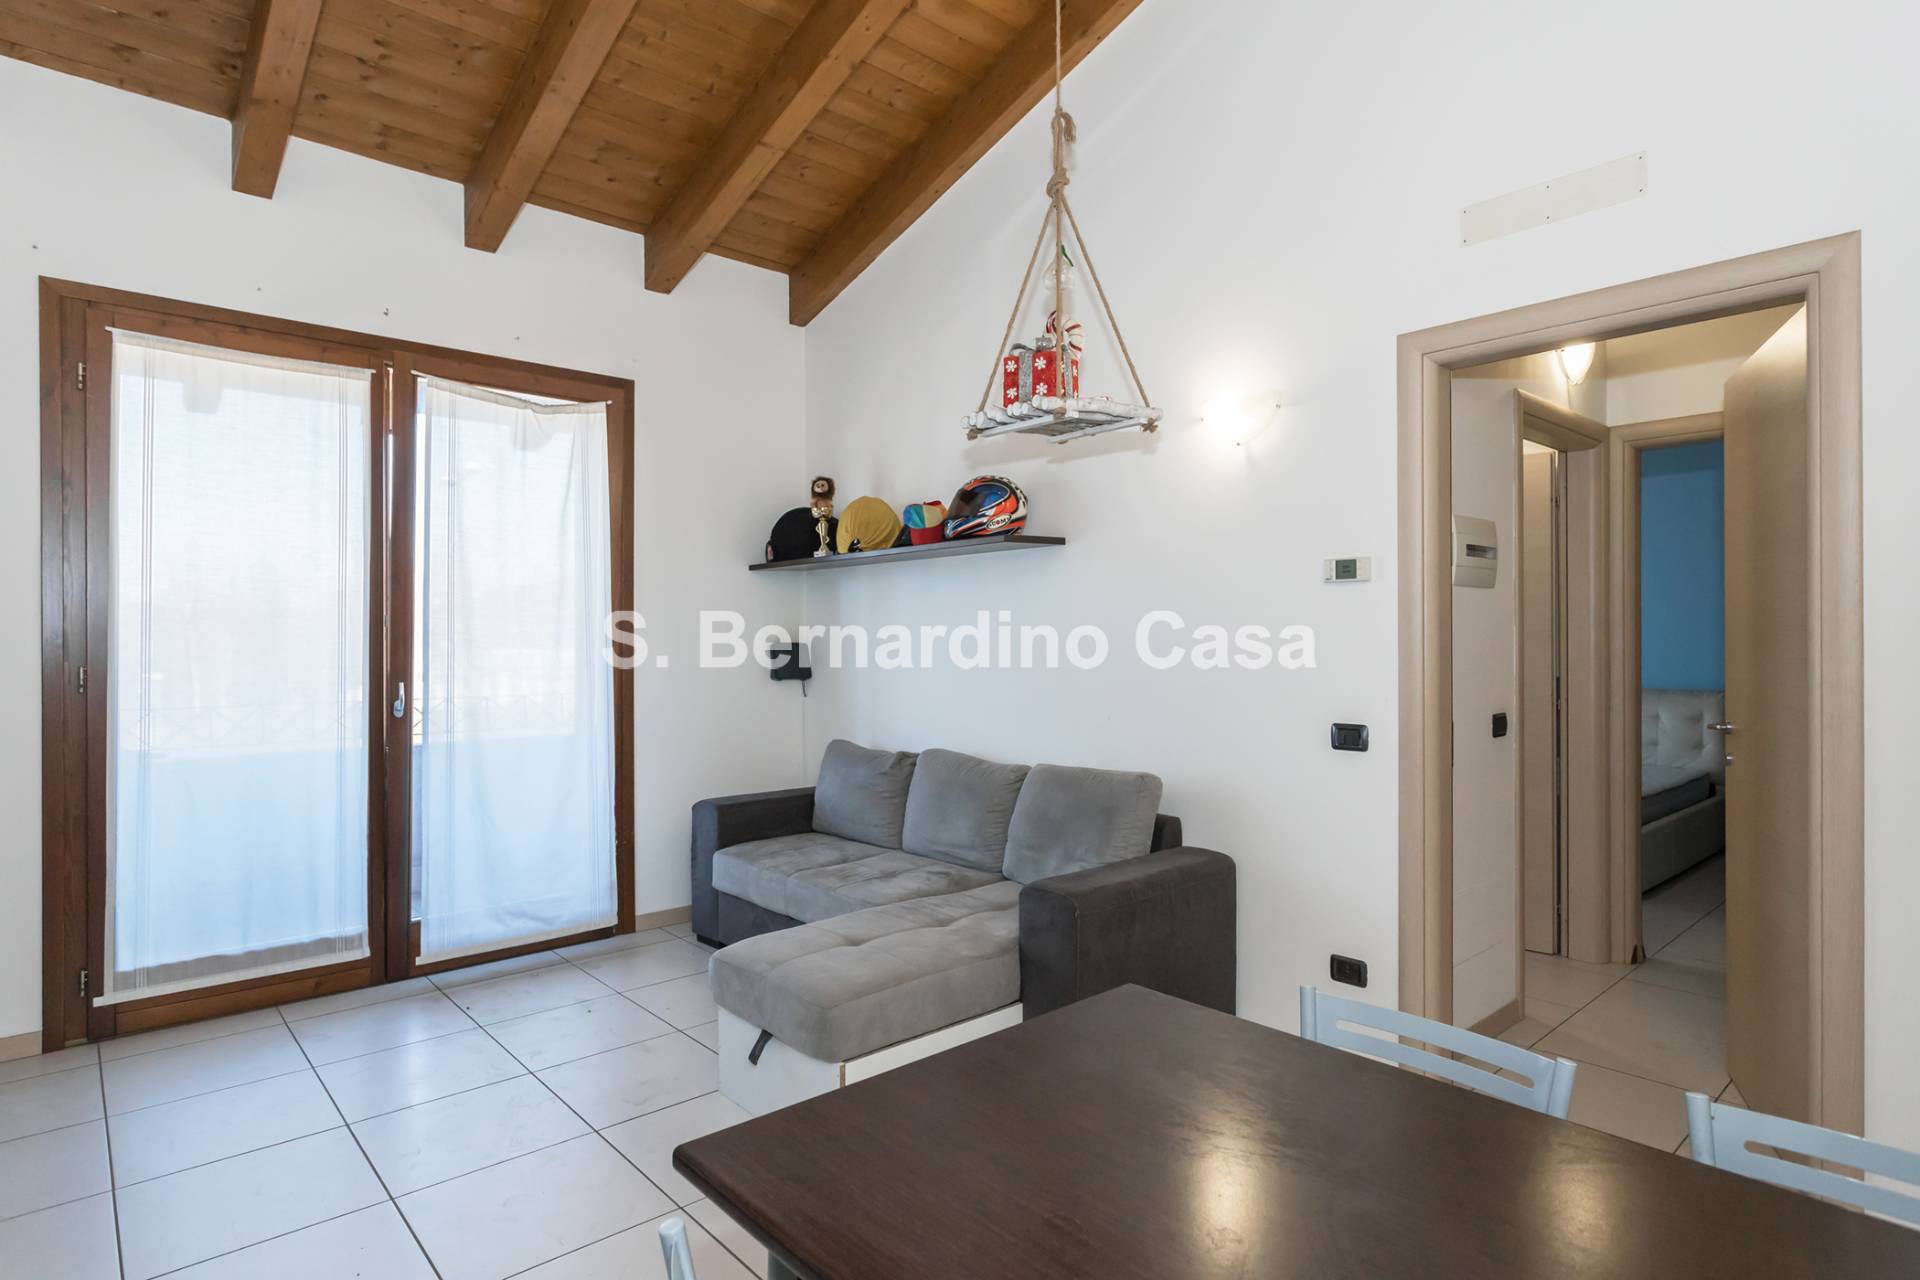 Appartamento in vendita a Scanzorosciate, 2 locali, prezzo € 138.000 | PortaleAgenzieImmobiliari.it